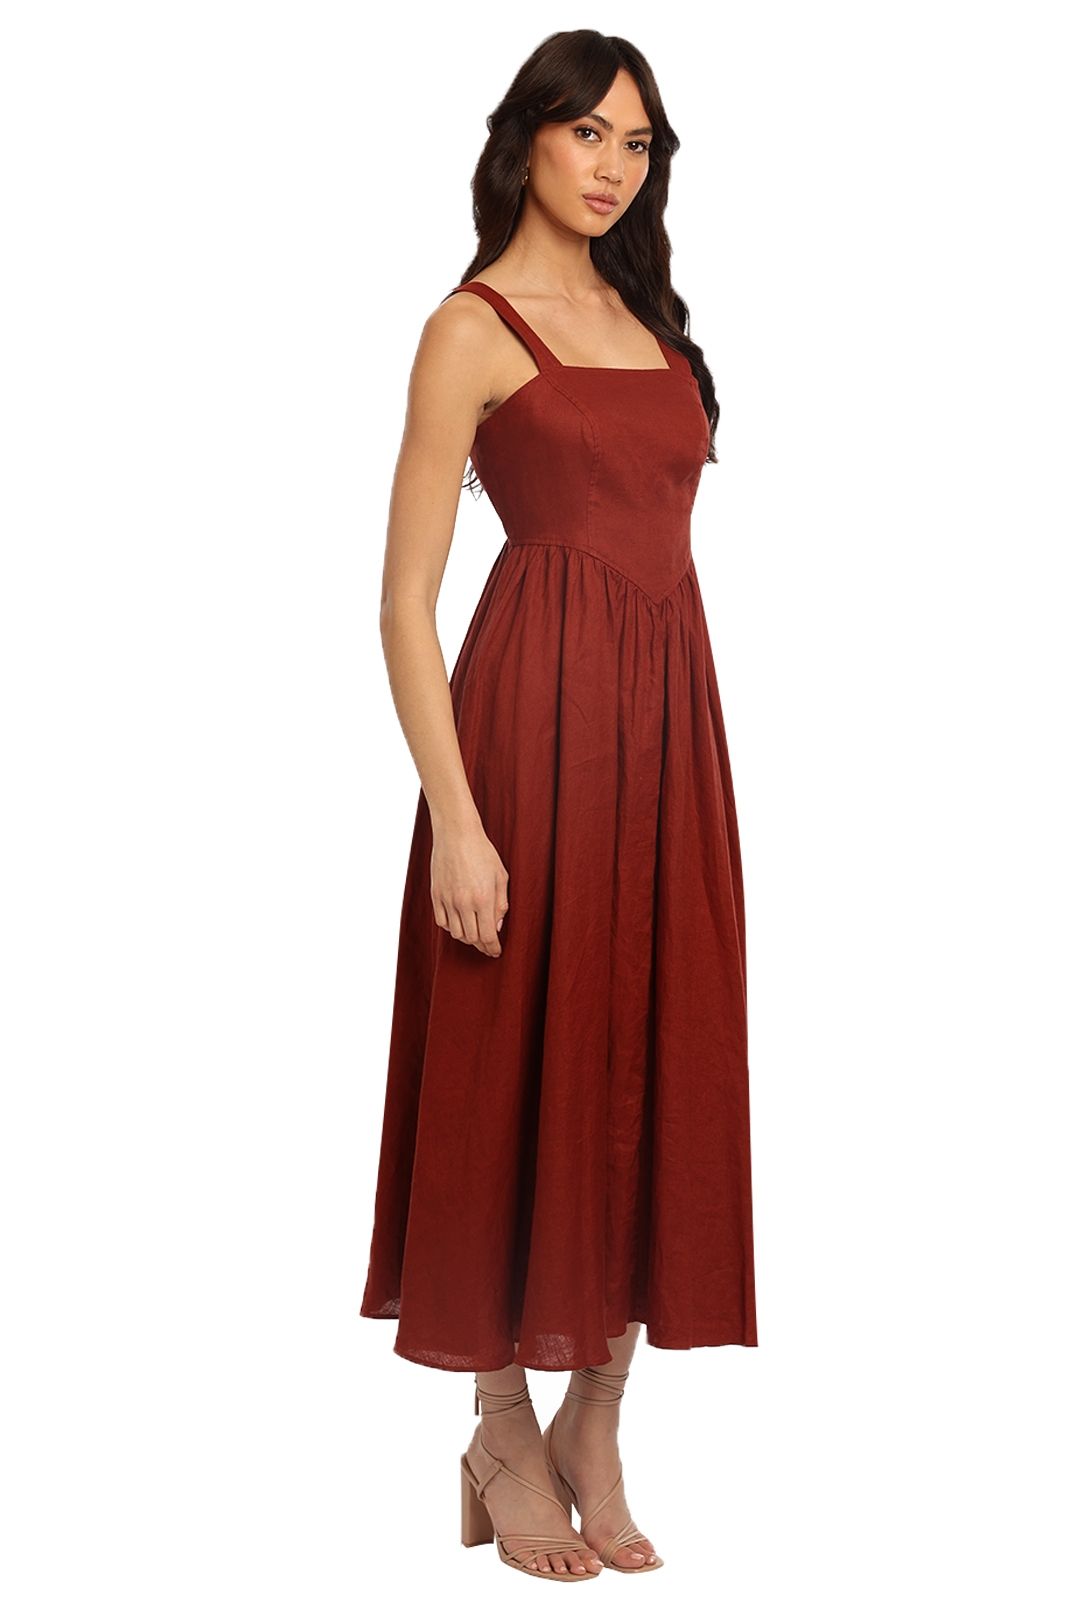 Steele Peridot Dress Red